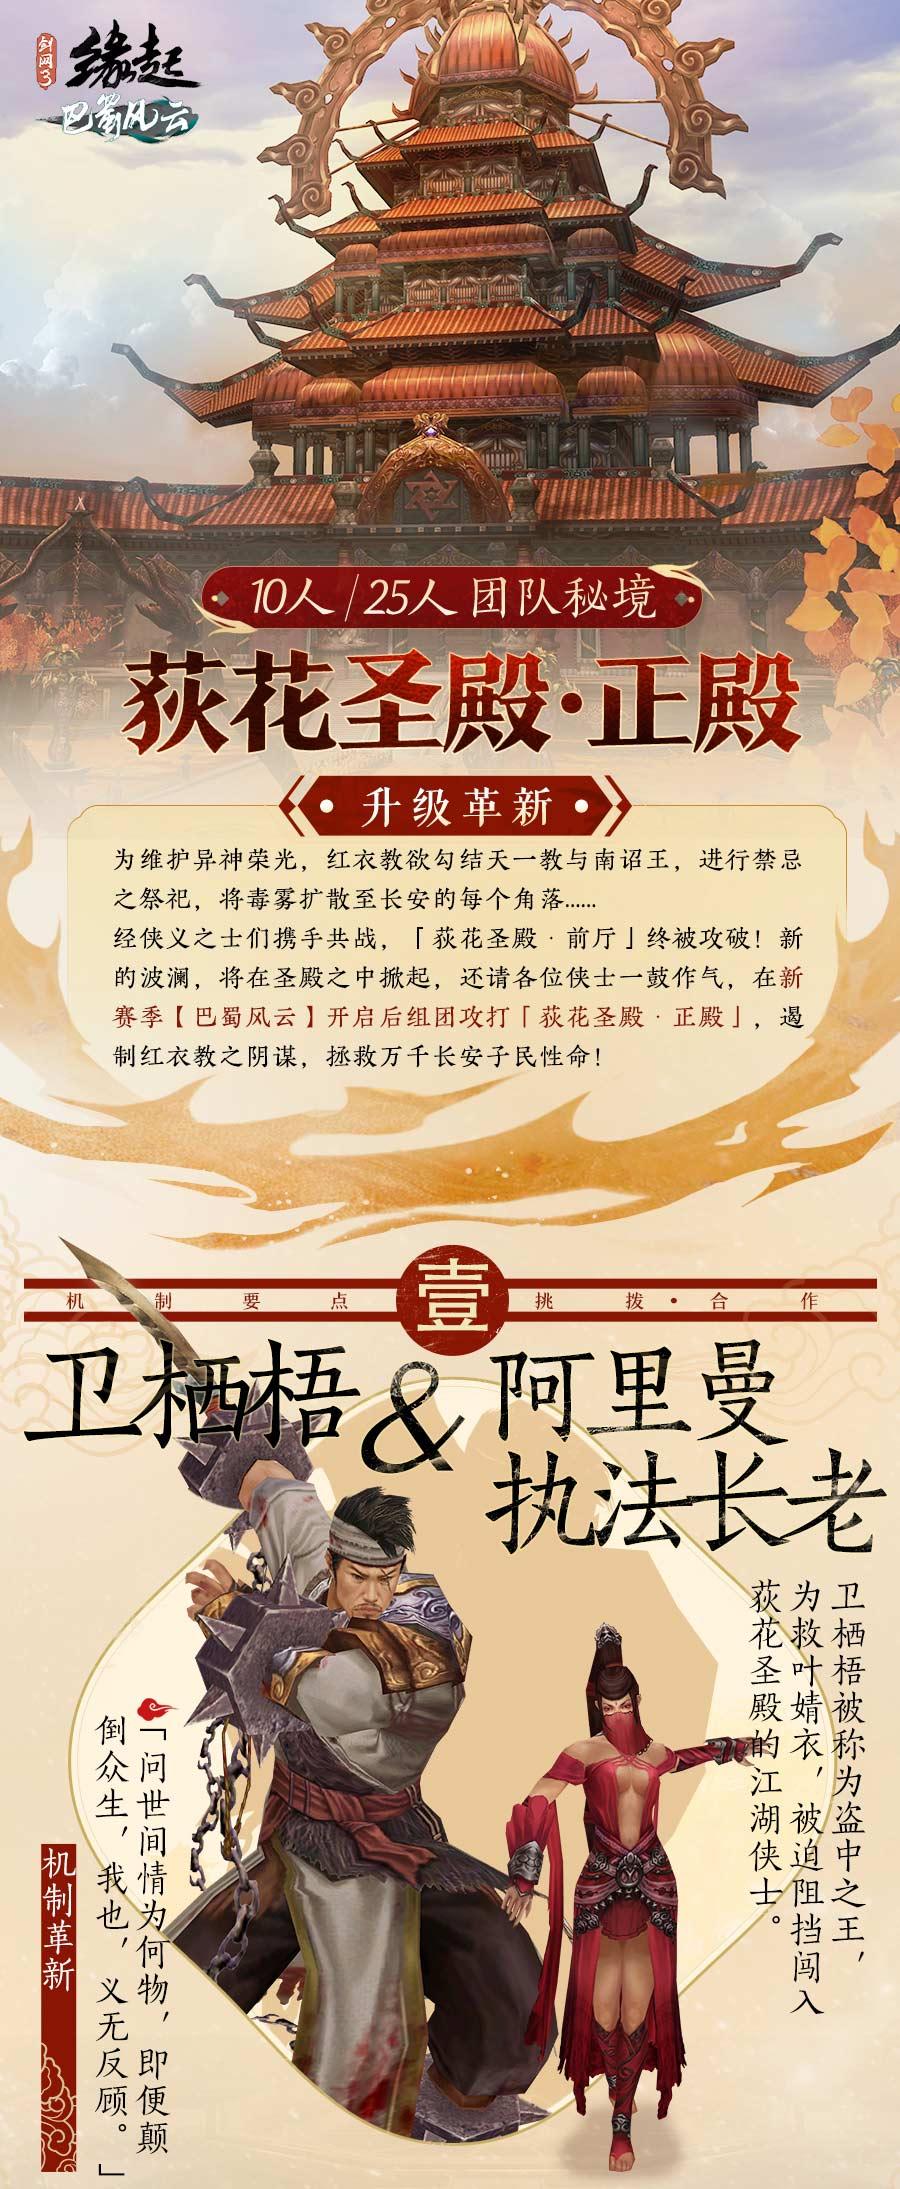 《剑网3缘起》七夕活动浪漫开启 全新秘境今日上线